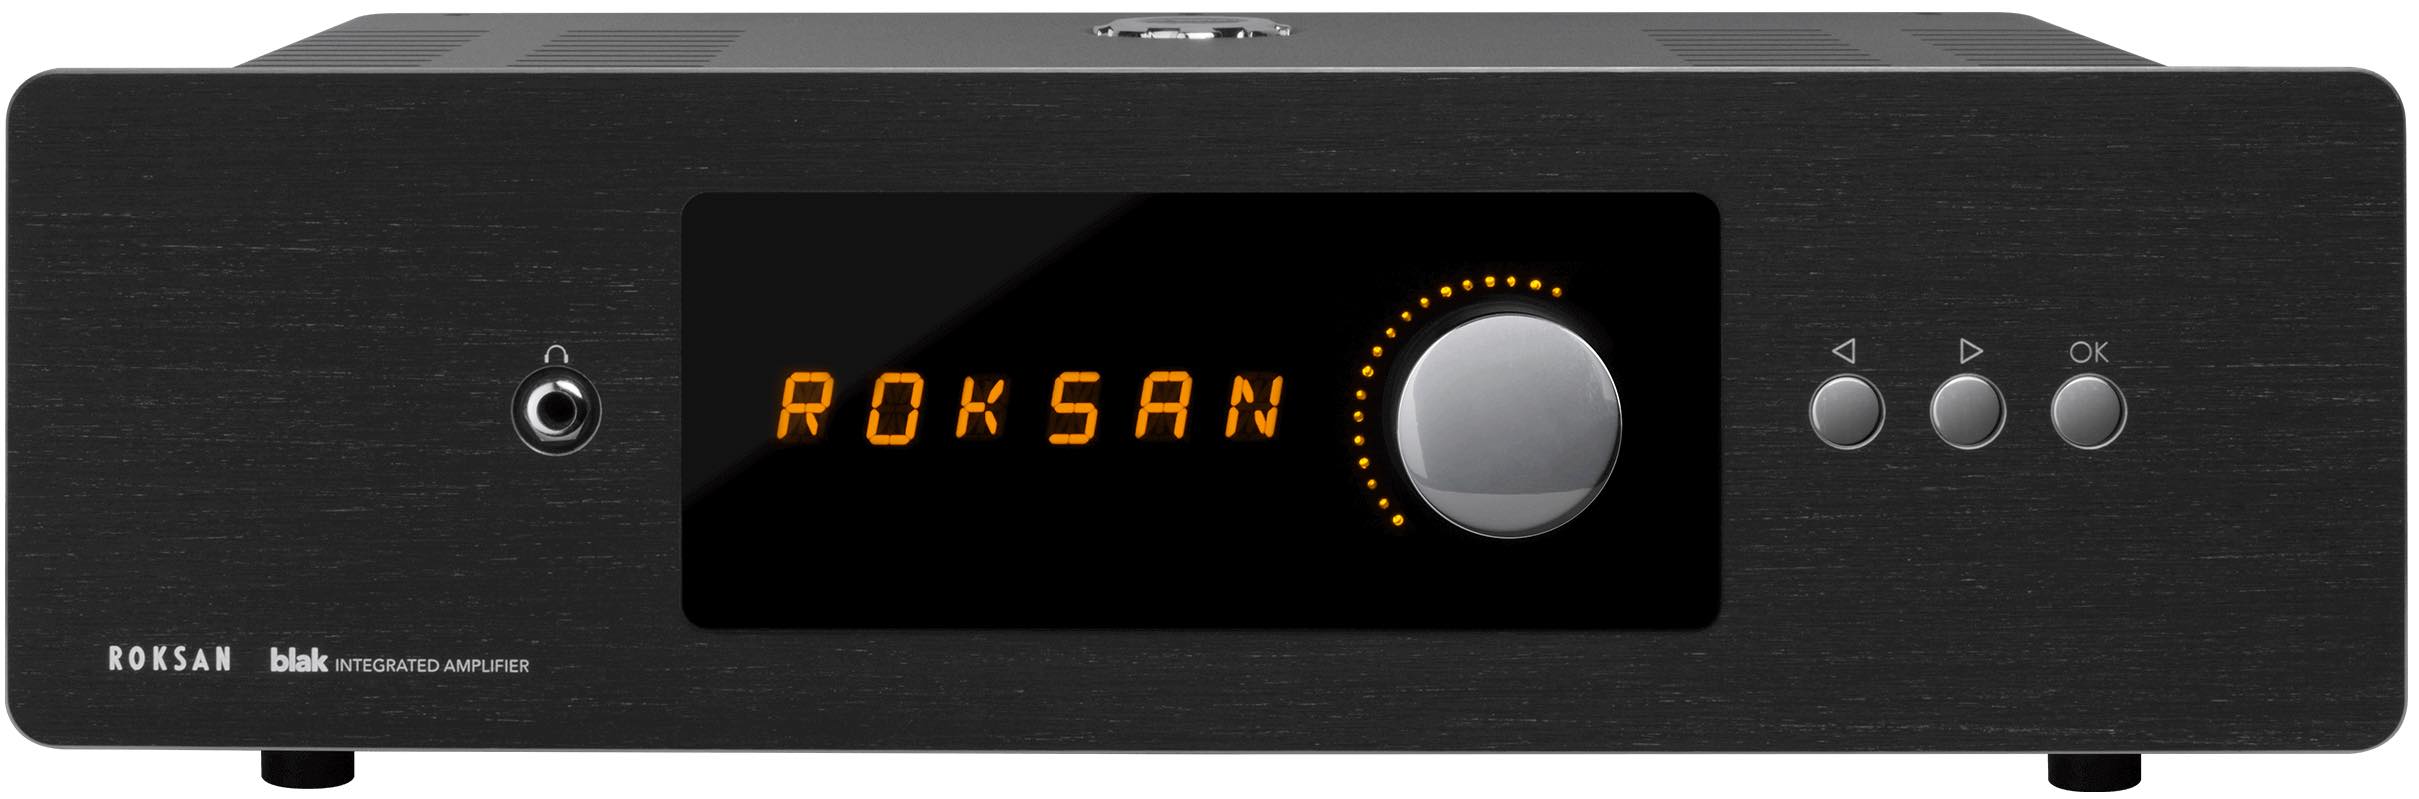 Фото № 1 Roksan blak Integrated Amplifier charcoal - цены, наличие, отзывы в интернет-магазине